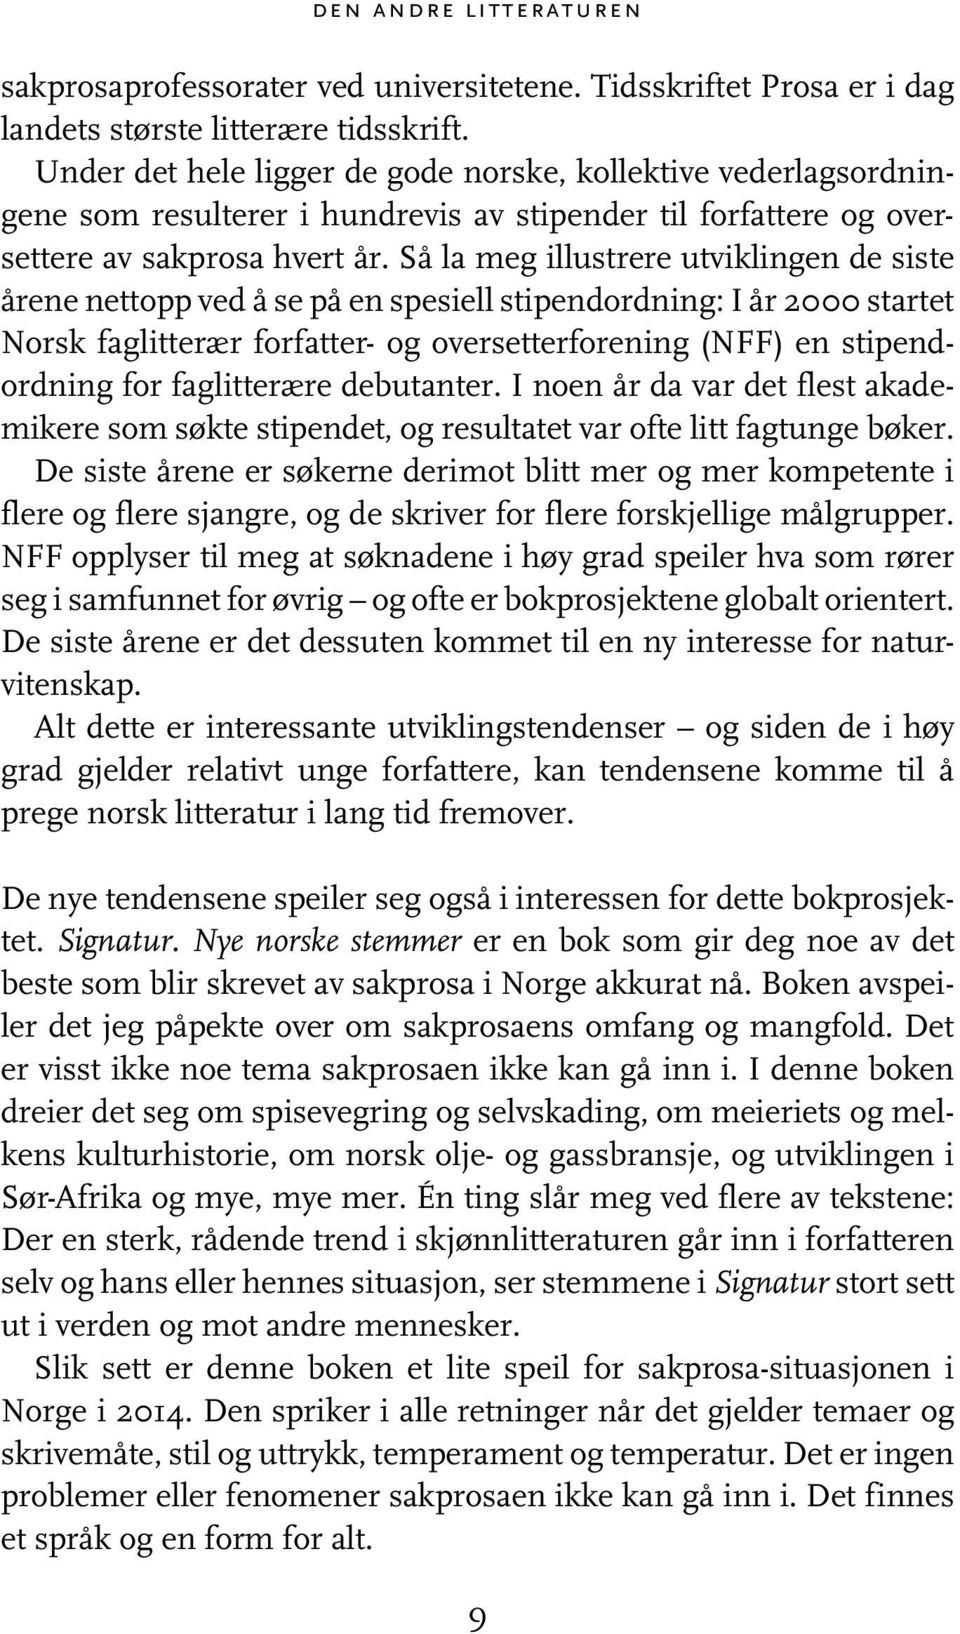 Så la meg illustrere utviklingen de siste årene nettopp ved å se på en spesiell stipendordning: I år 2000 startet Norsk faglitterær forfatter- og oversetterforening (NFF) en stipendordning for